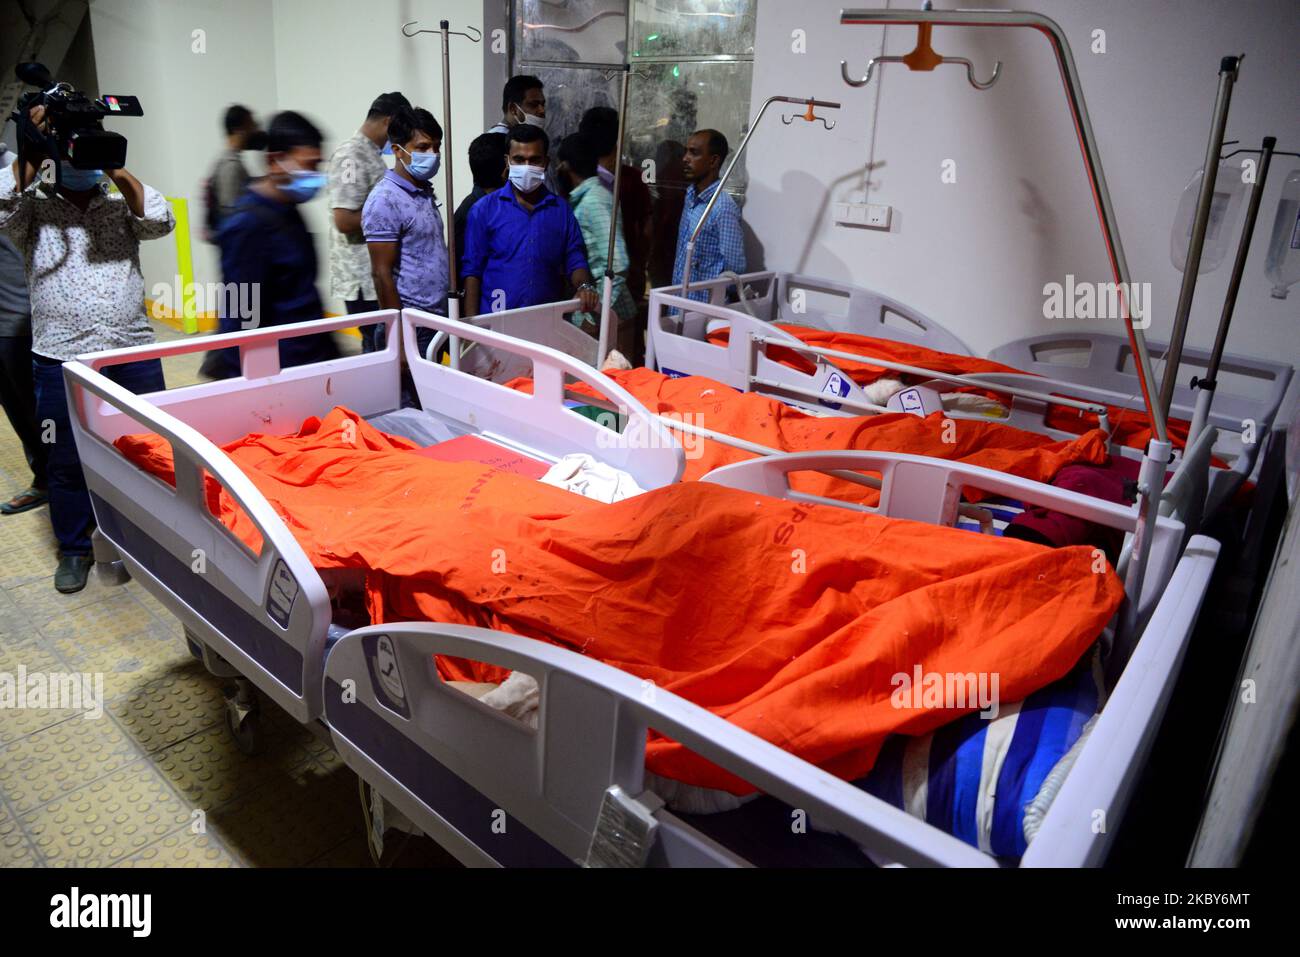 (NOTE AUX ÉDITEURS : l'image contient du contenu graphique.) Des cadavres de victimes soupçonnées d'explosion de gaz sont vus dans une morgue d'hôpital à Dhaka, au Bangladesh, sur 5 septembre 2020. Une explosion de gaz présumée a déchiré une mosquée bangladaise, tuant au moins 12 personnes, tandis que des dizaines de personnes ont subi des brûlures potentiellement mortelles, a déclaré la police sur 5 septembre. (Photo par Mamunur Rashid/NurPhoto) Banque D'Images